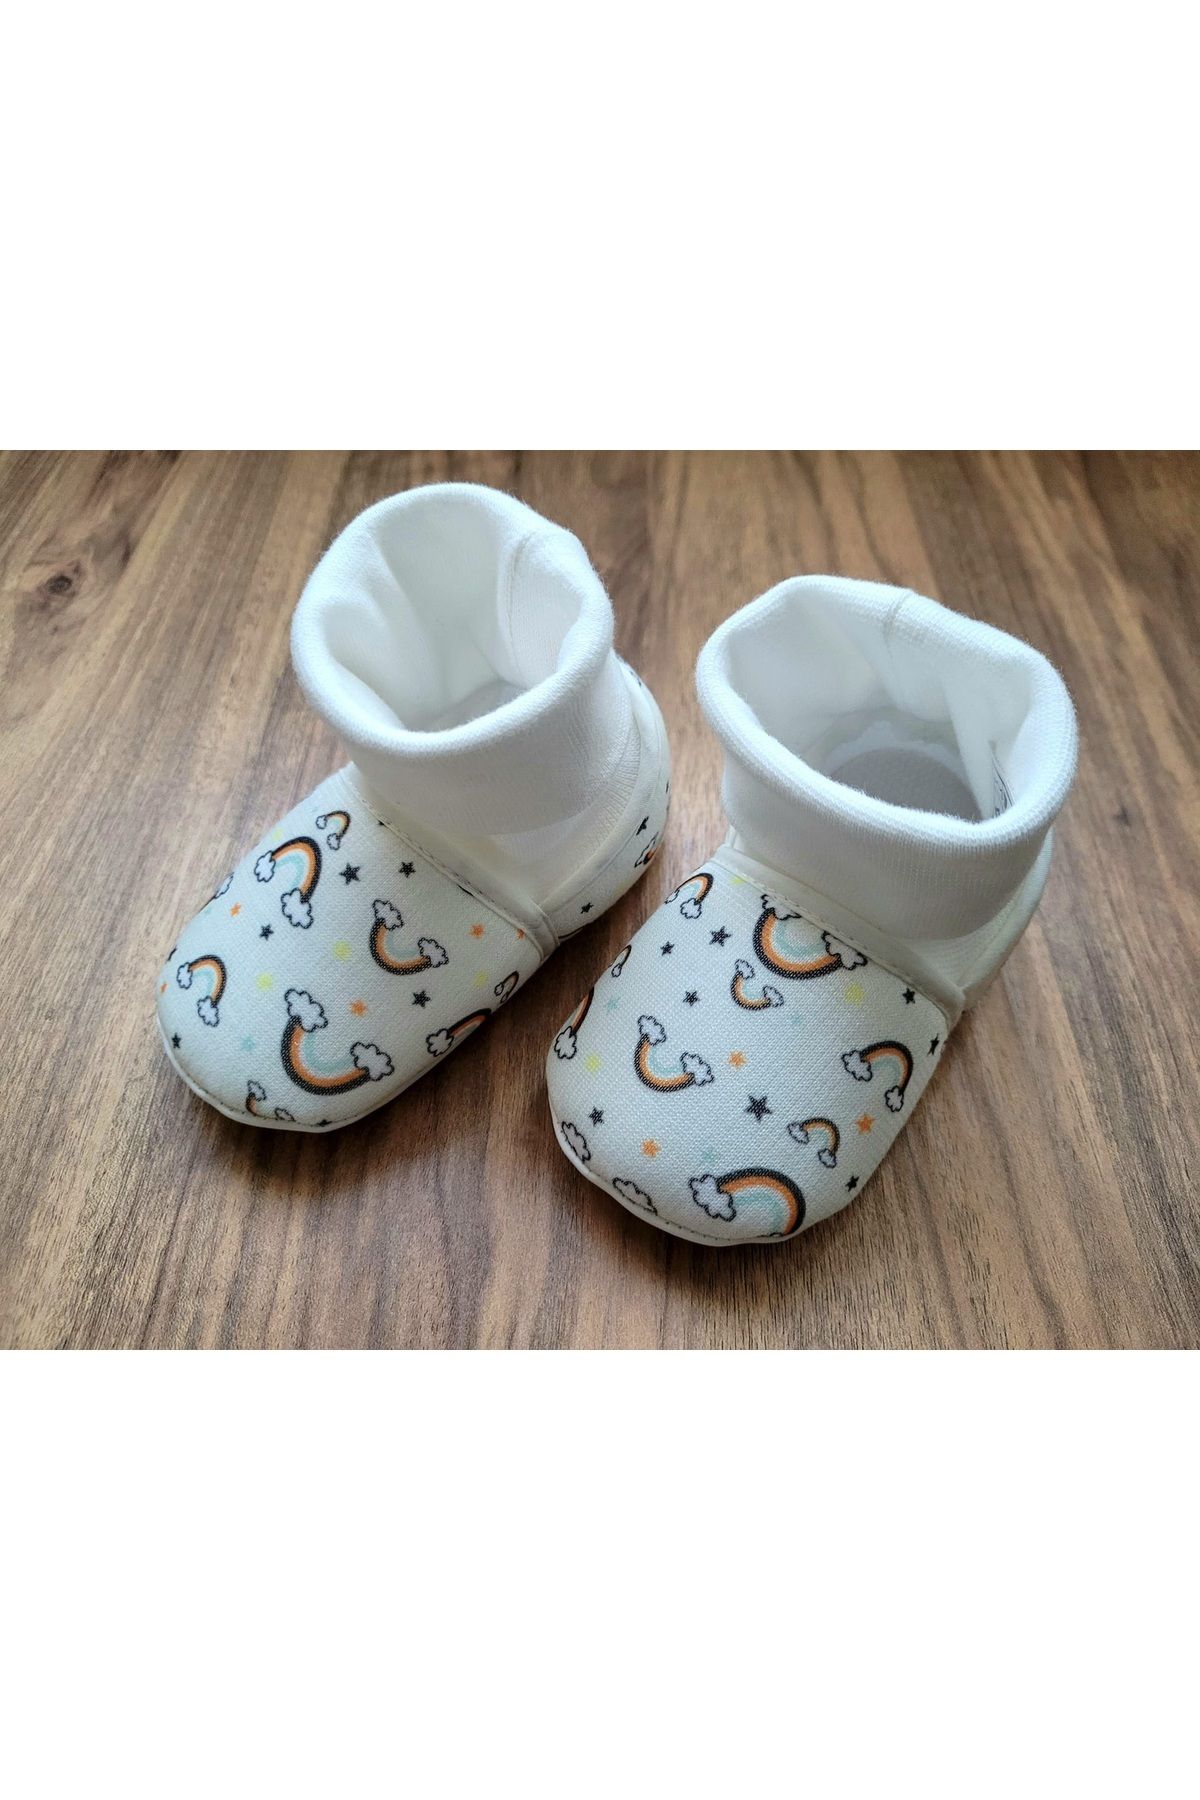 Funny Baby gökkuşağı desenli kız bebek panduf ev ayakkabısı